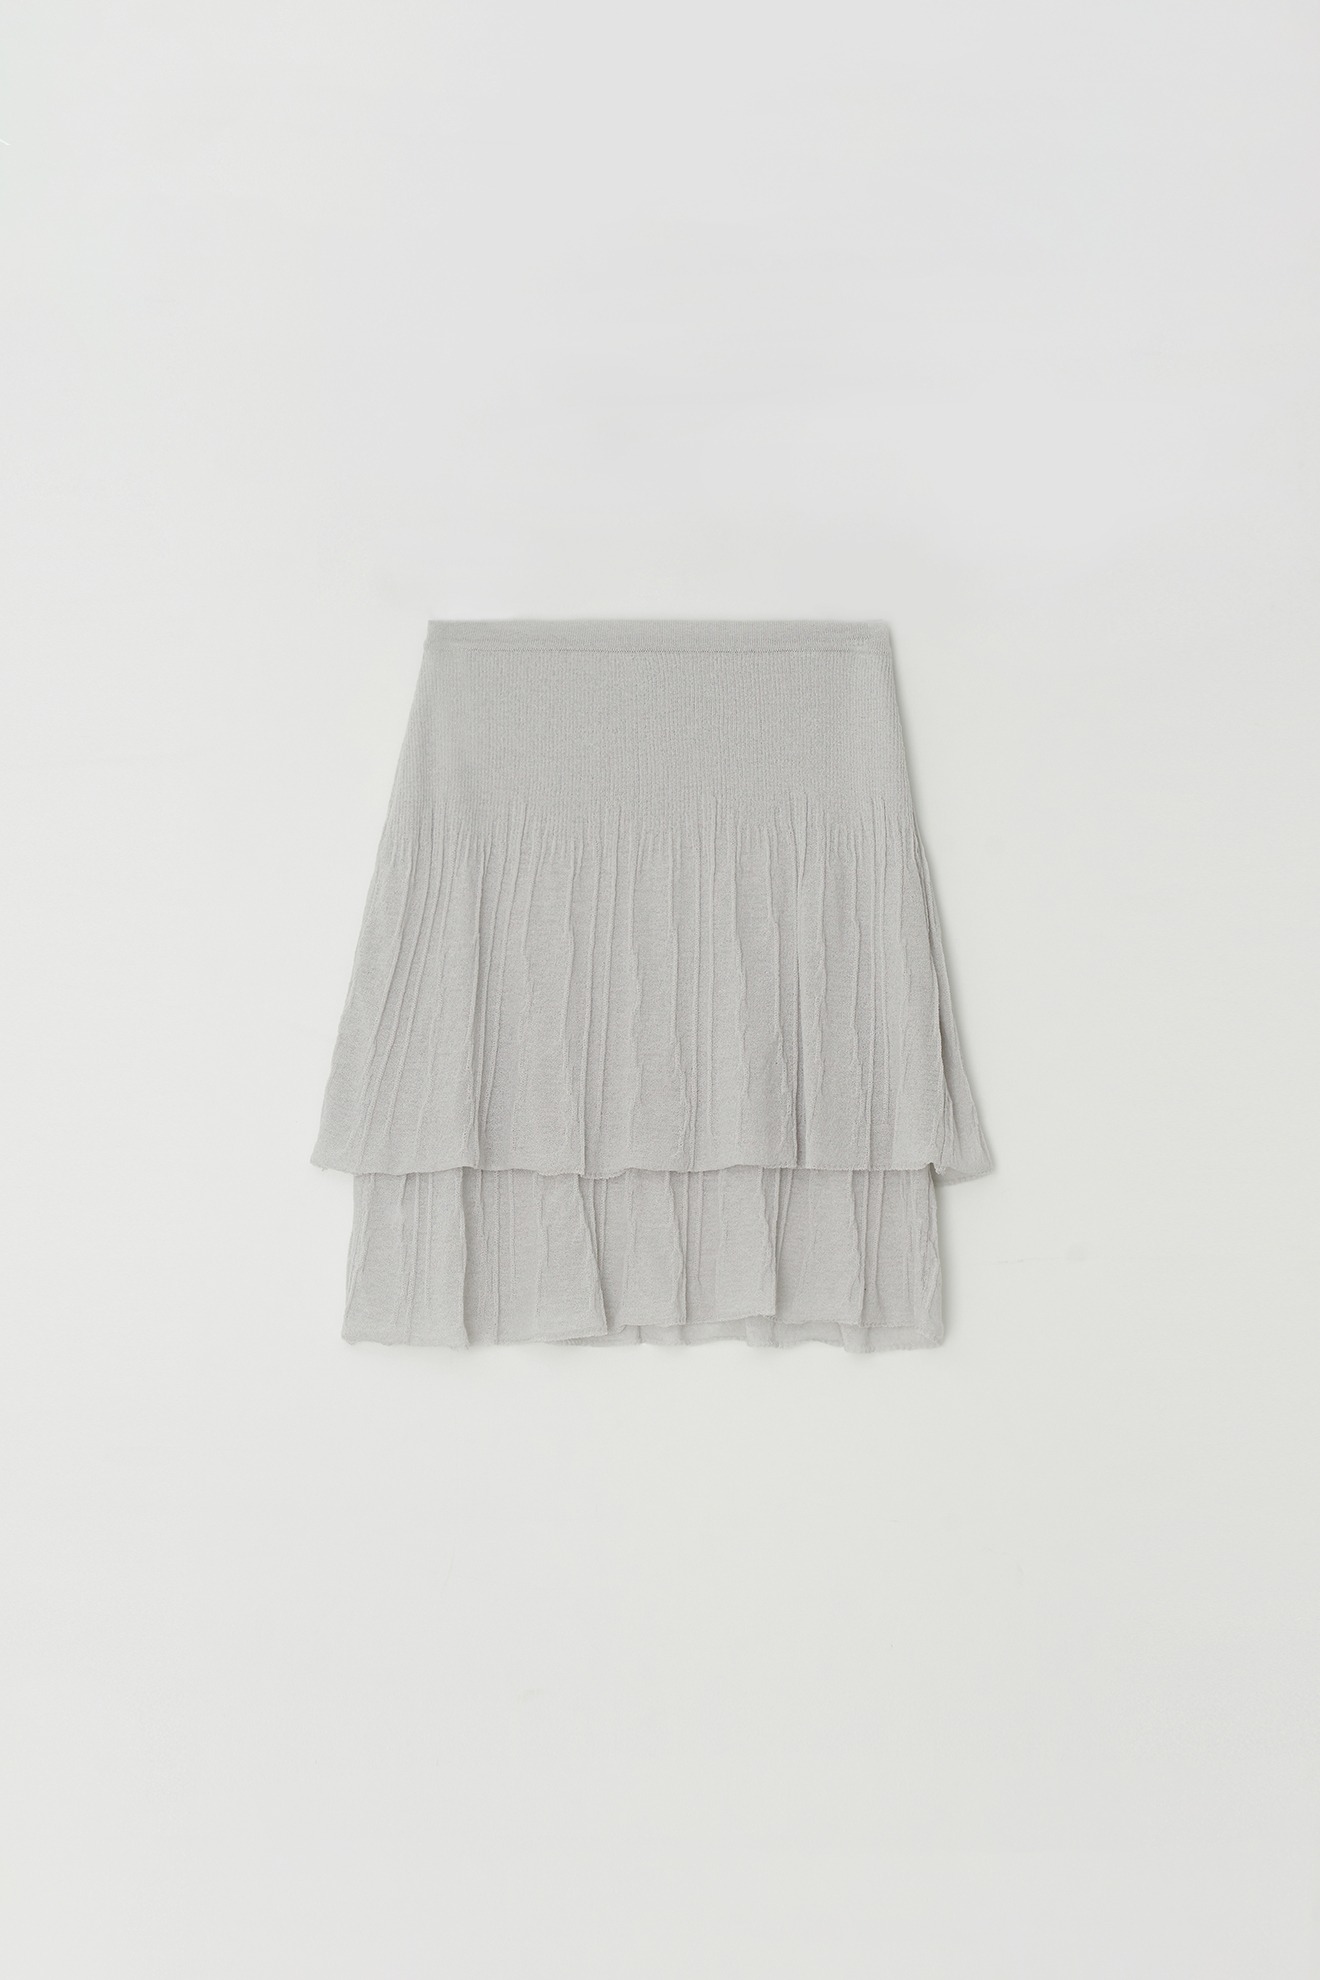 Flare Skirt (gray)